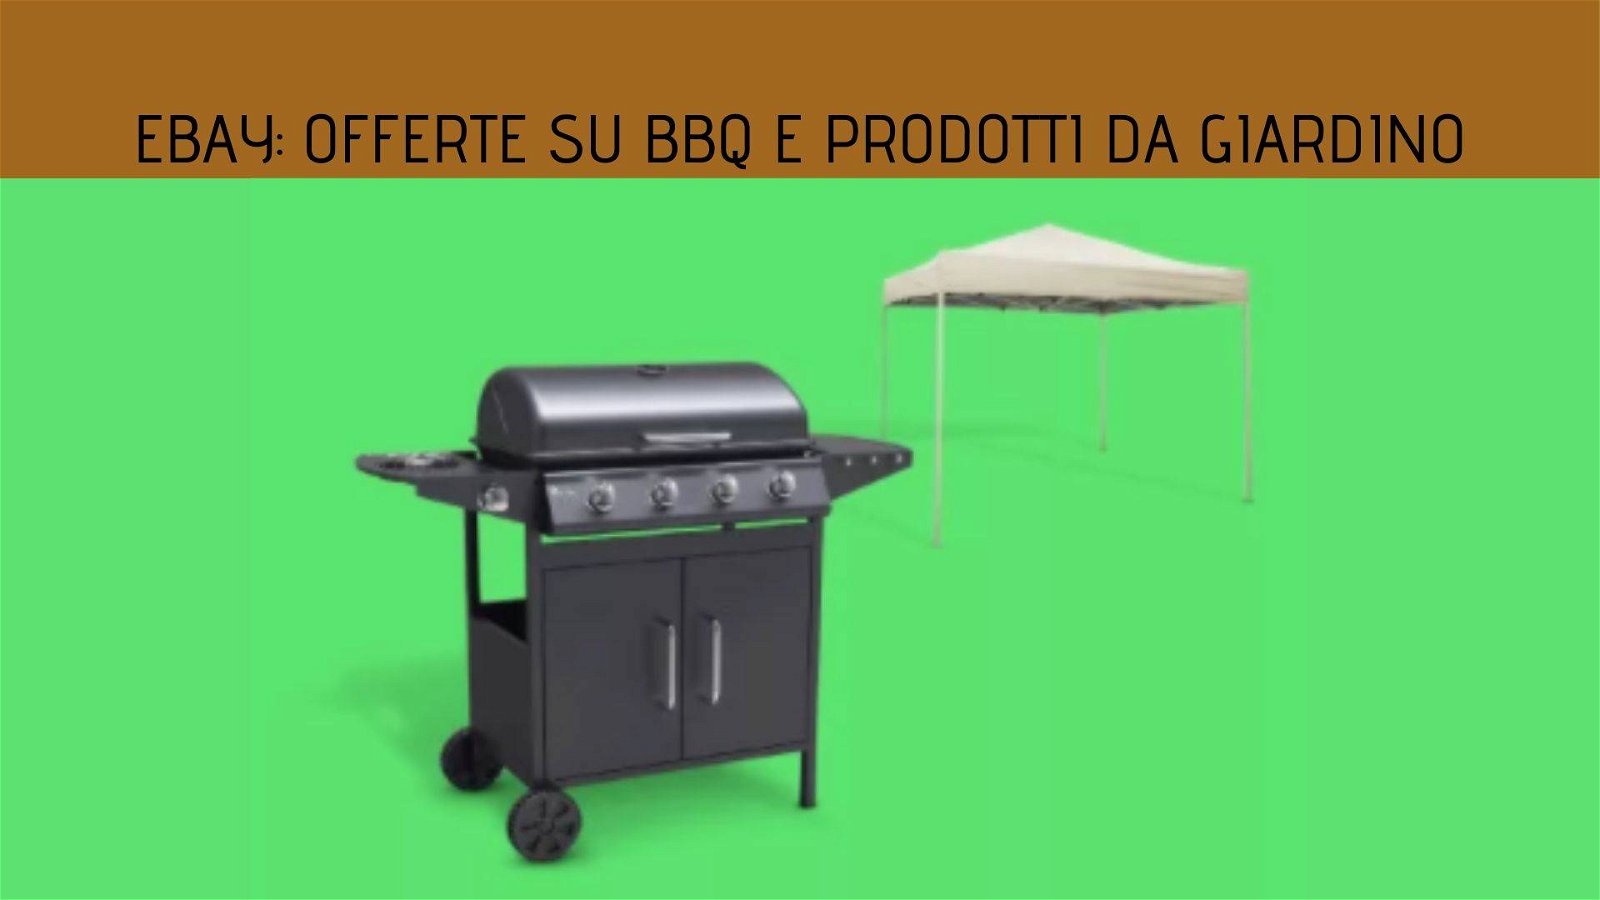 Immagine di Offerte su barbecue e prodotti da giardino da eBay